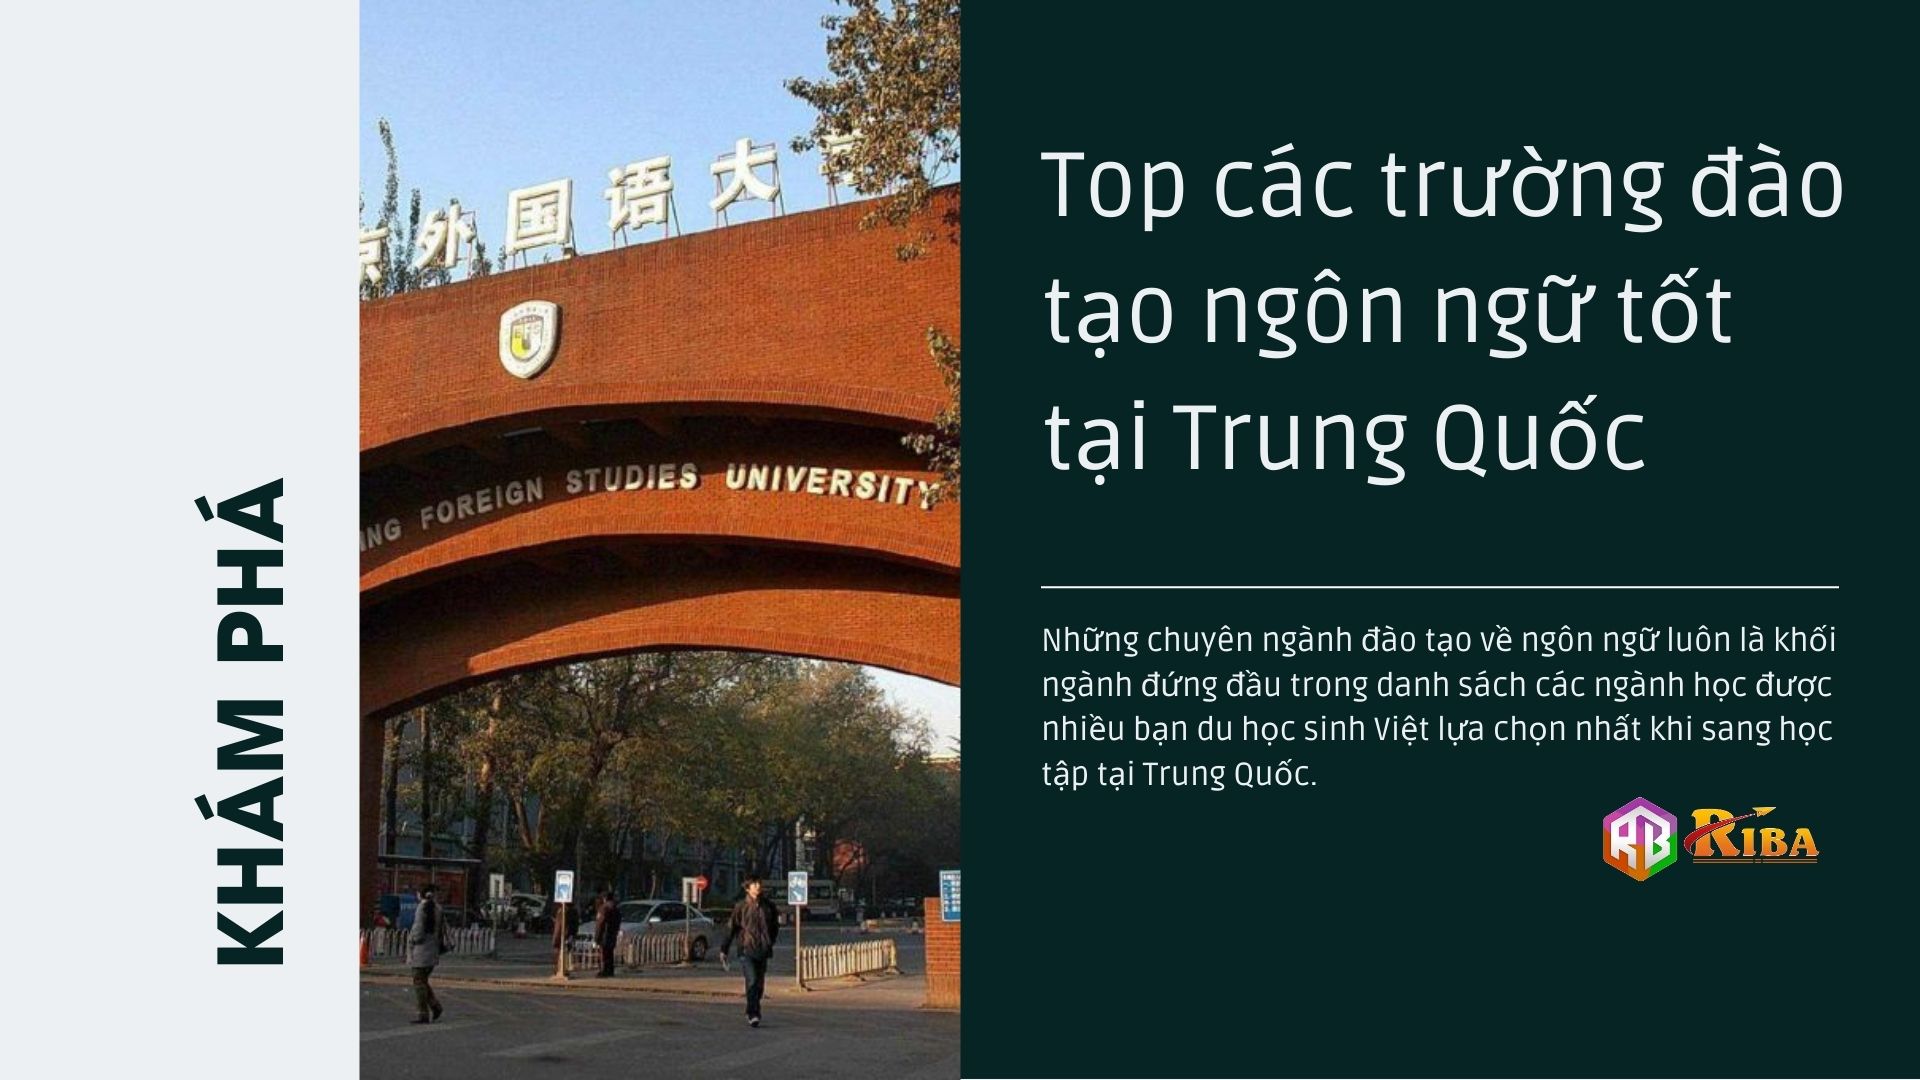 Top 10 trường đào tạo ngôn ngữ tốt tại Trung Quốc